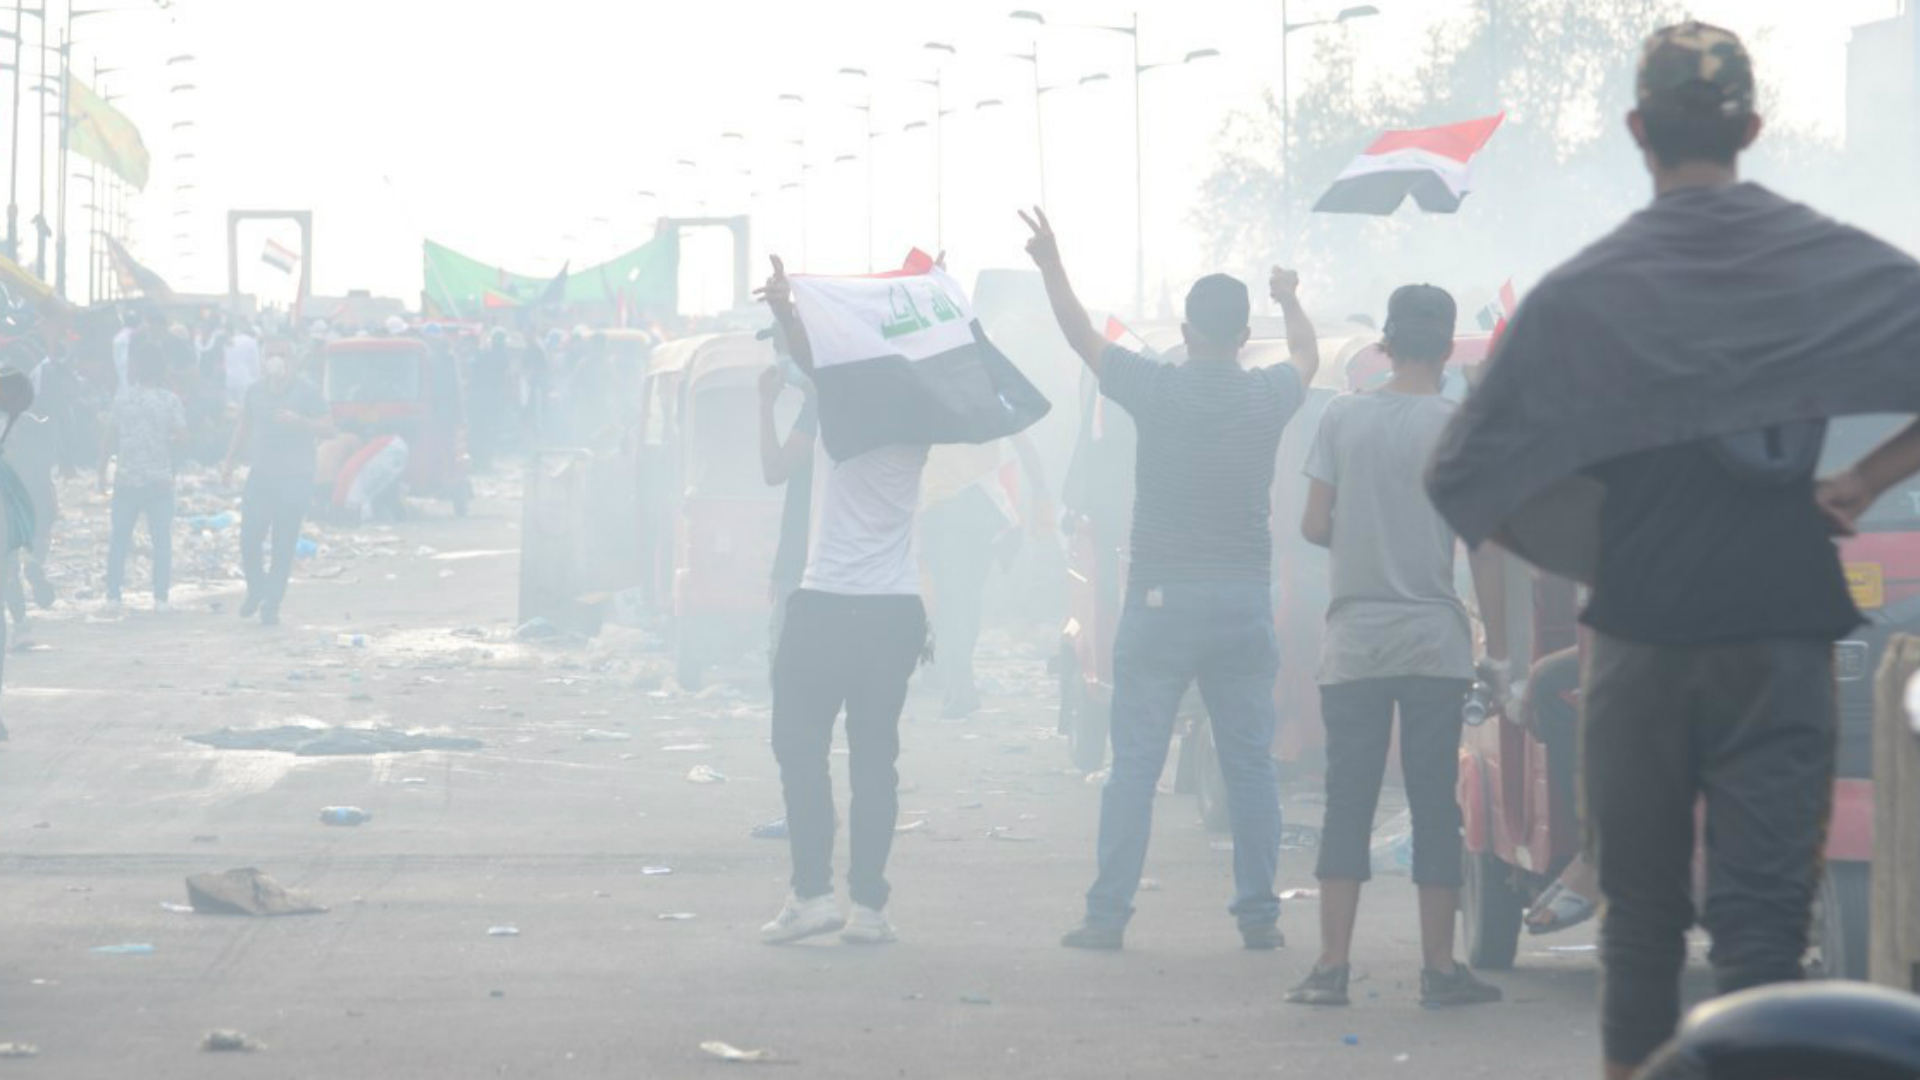 وقوع إصابات في ساحة الخلاني بعد استخدام قوات الأمن للنار والغاز المسيل للدموع